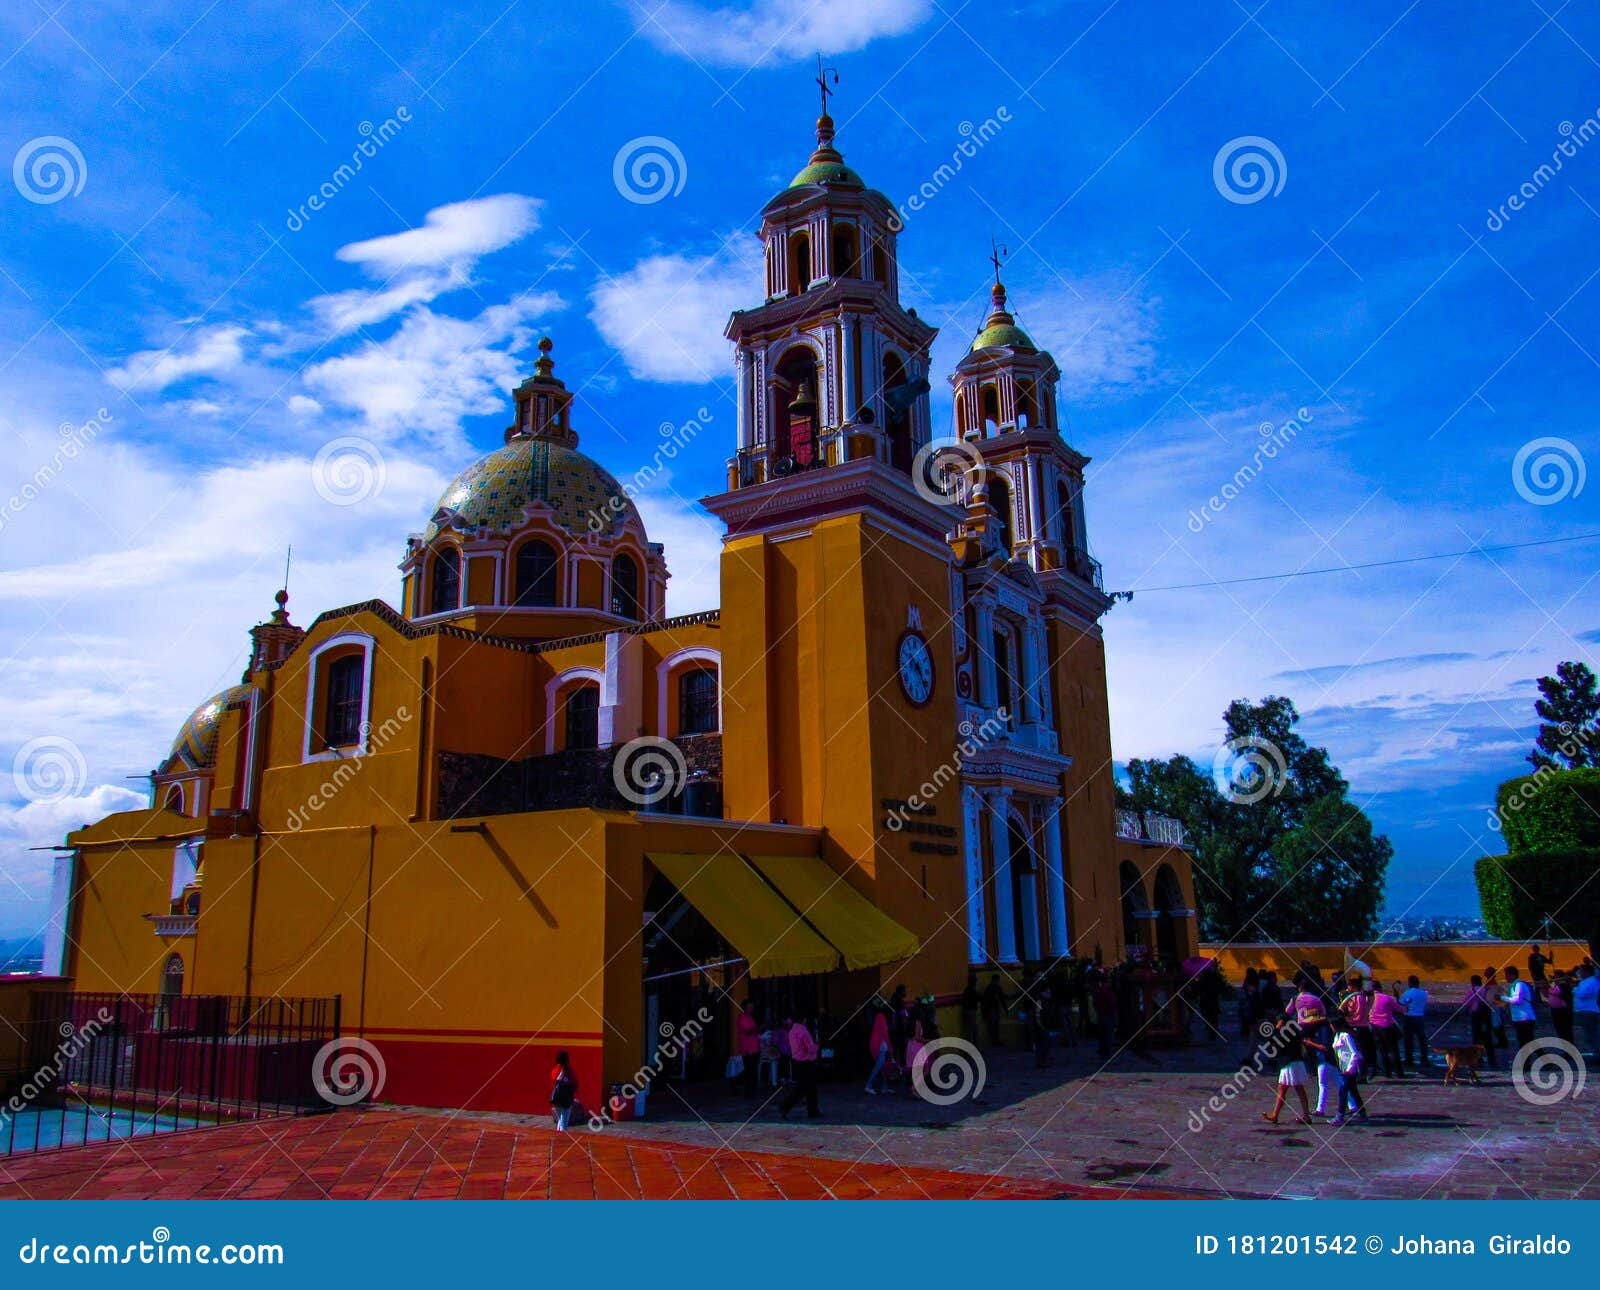 Landscape of Santuario De La Virgen De Los Remedios Editorial Photography -  Image of remedios, church: 181201542